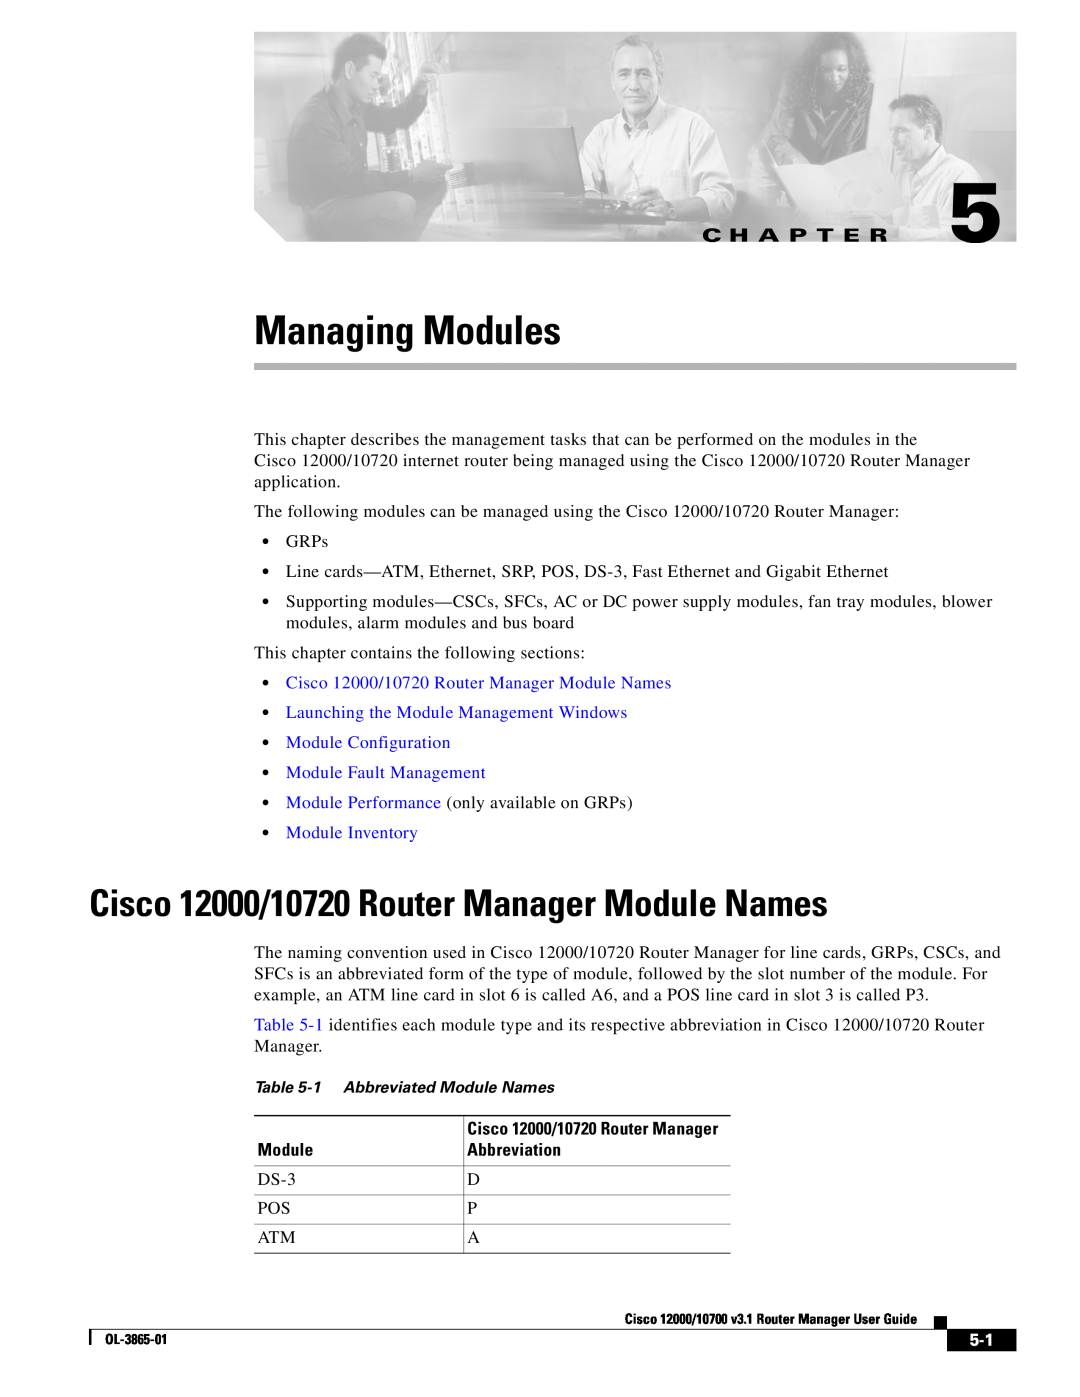 Cisco Systems 10700 manual Cisco 12000/10720 Router Manager Module Names, C H A P T E R, Module Fault Management 